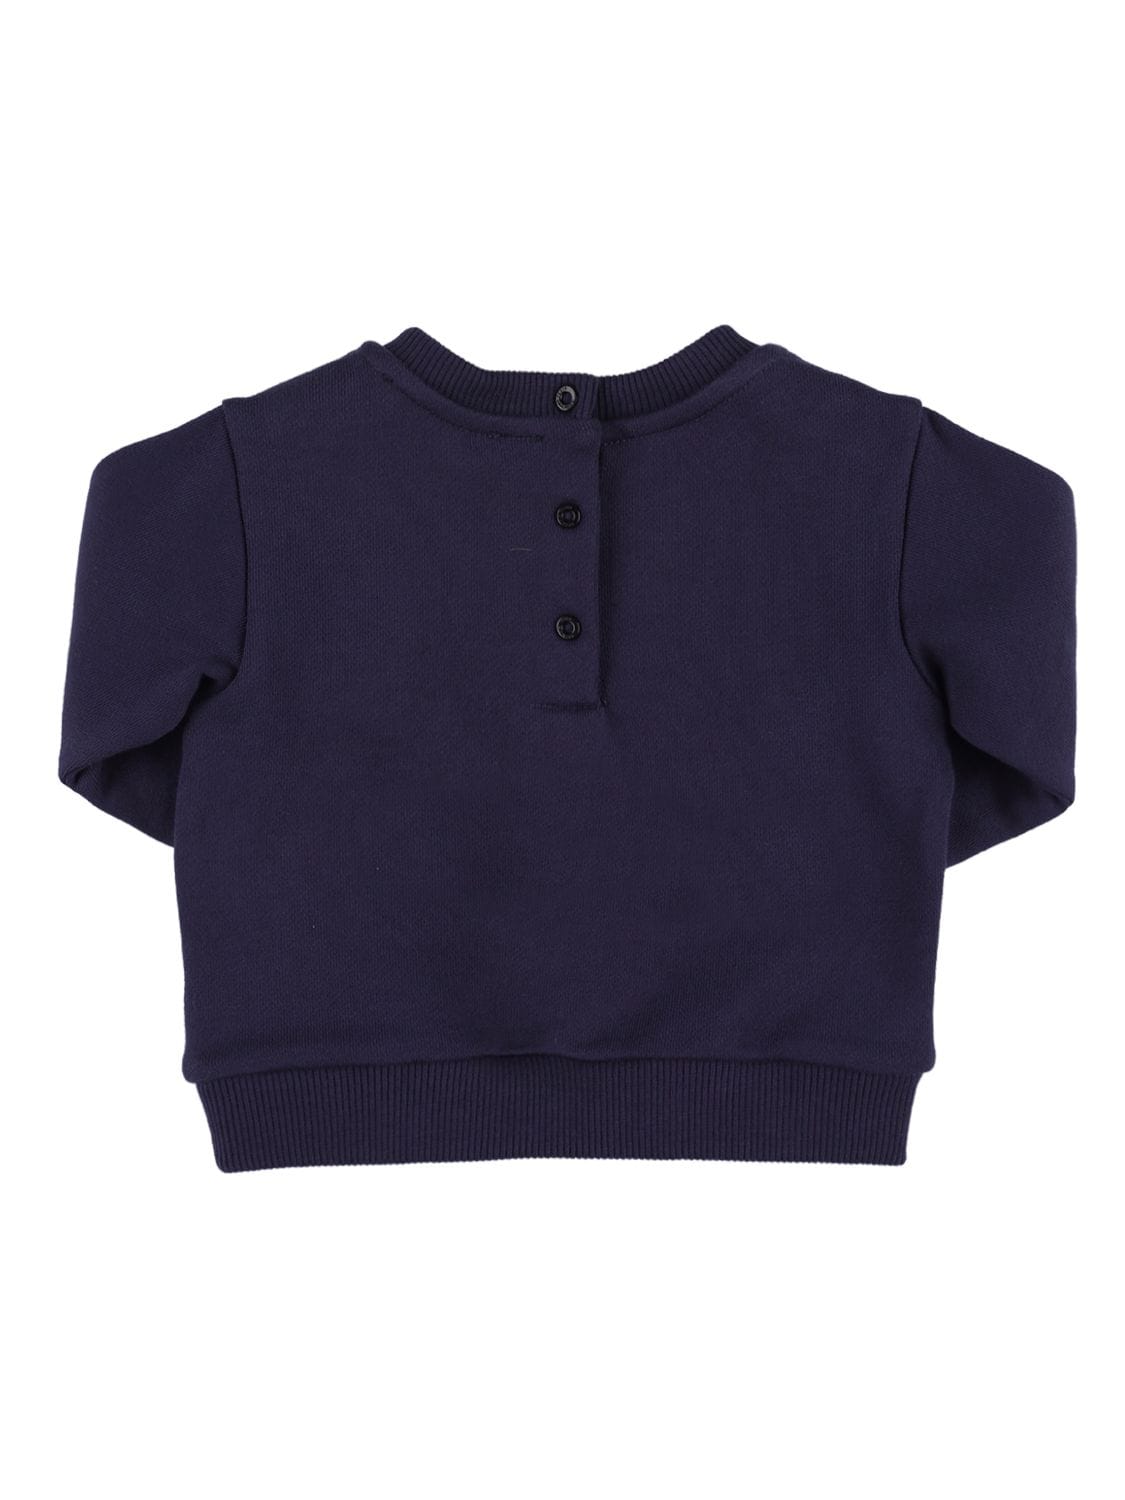 Shop Balmain Organic Cotton Sweatshirt W/logo In Navy